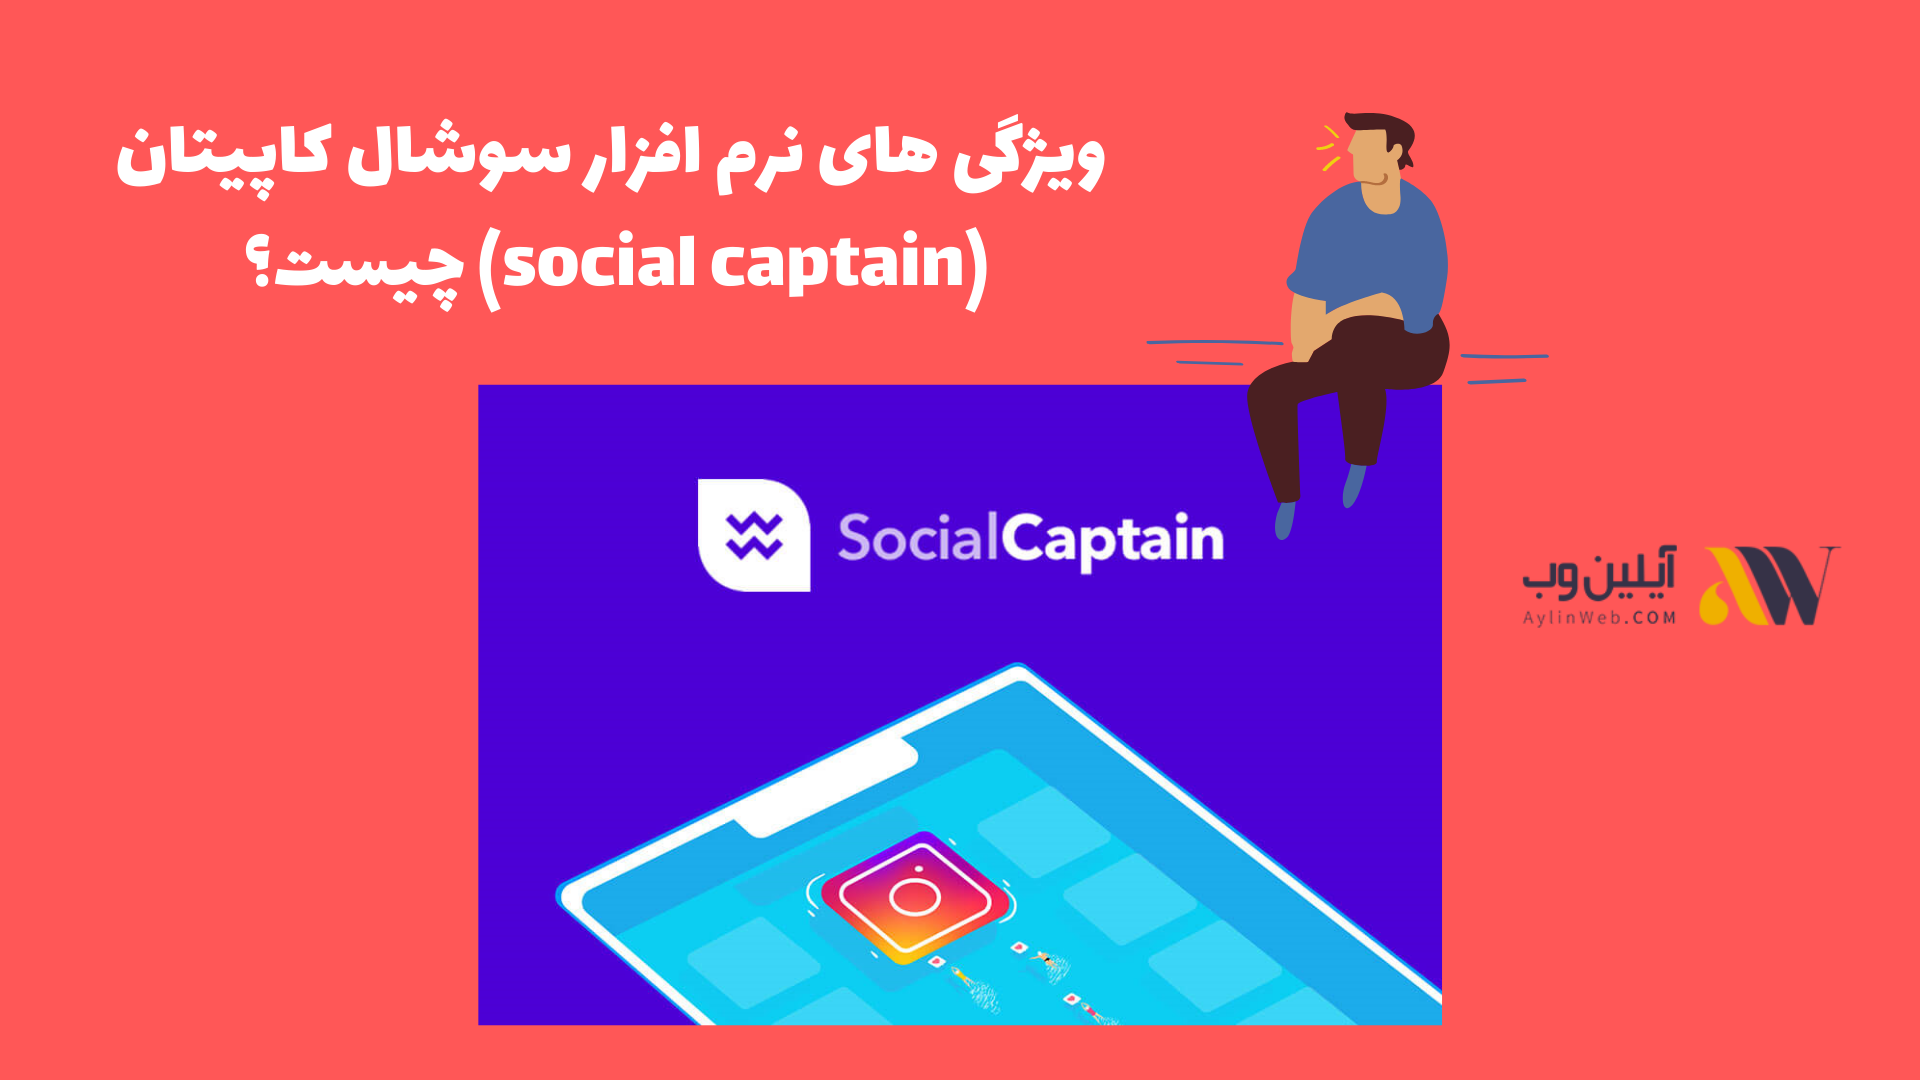 ویژگی های نرم افزار سوشال کاپیتان (social captain) چیست؟